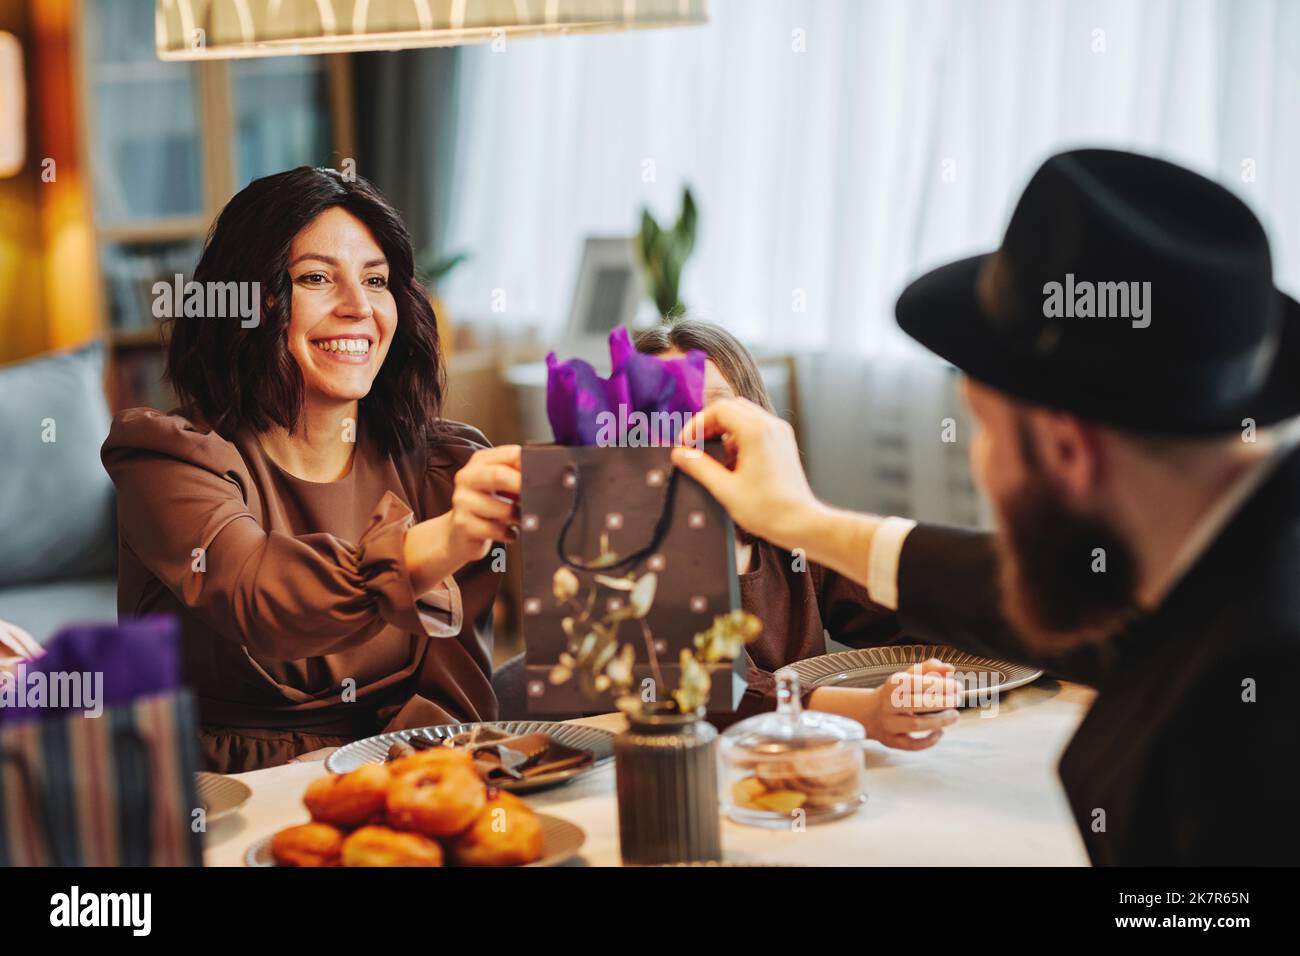 Portrait d'un couple juif adulte partageant des cadeaux à la table du dîner dans un cadre confortable Banque D'Images